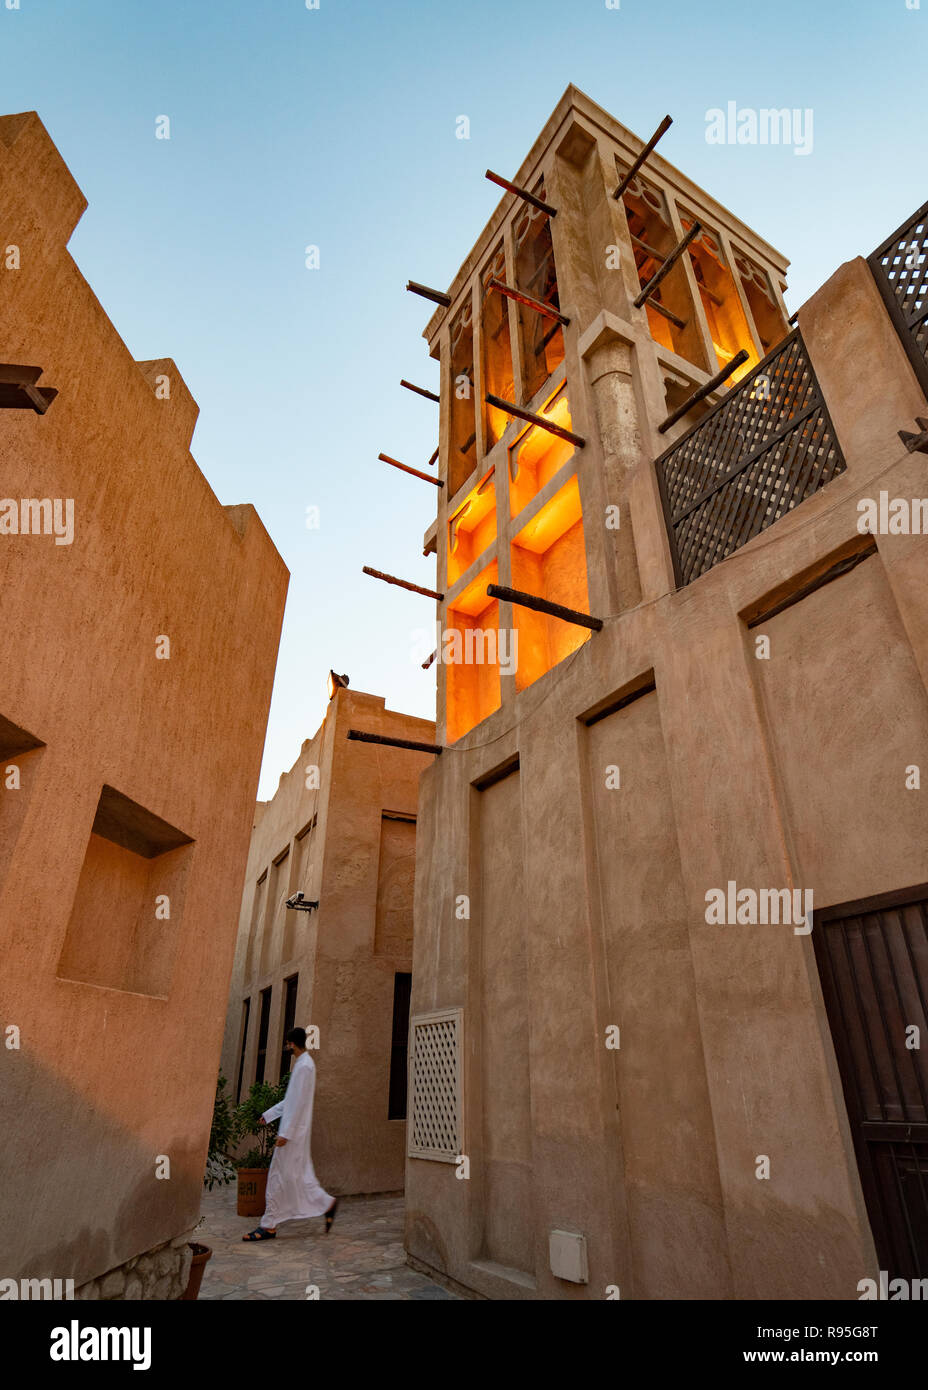 Original Historic Al Fahidi District In Dubai United Arab Emirates